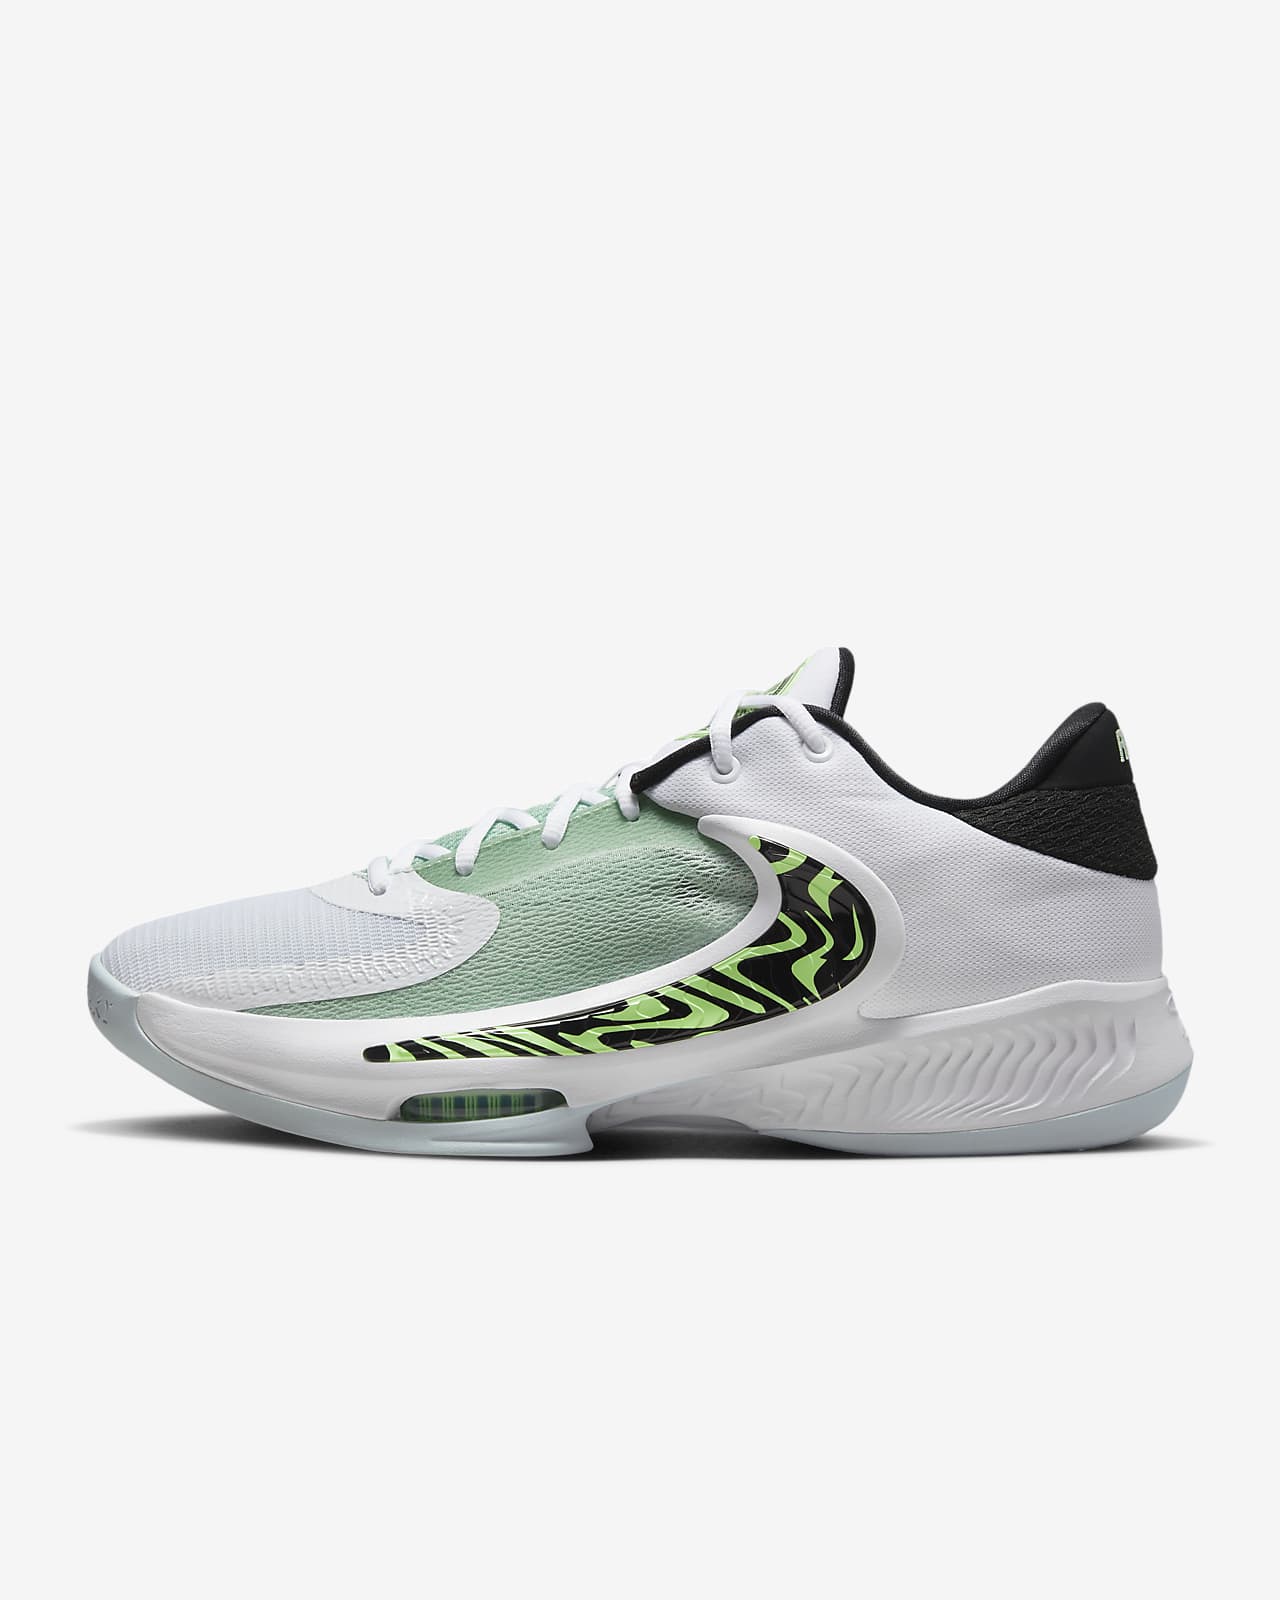 Zoom Freak 4 Basketball Shoes. Nike AE